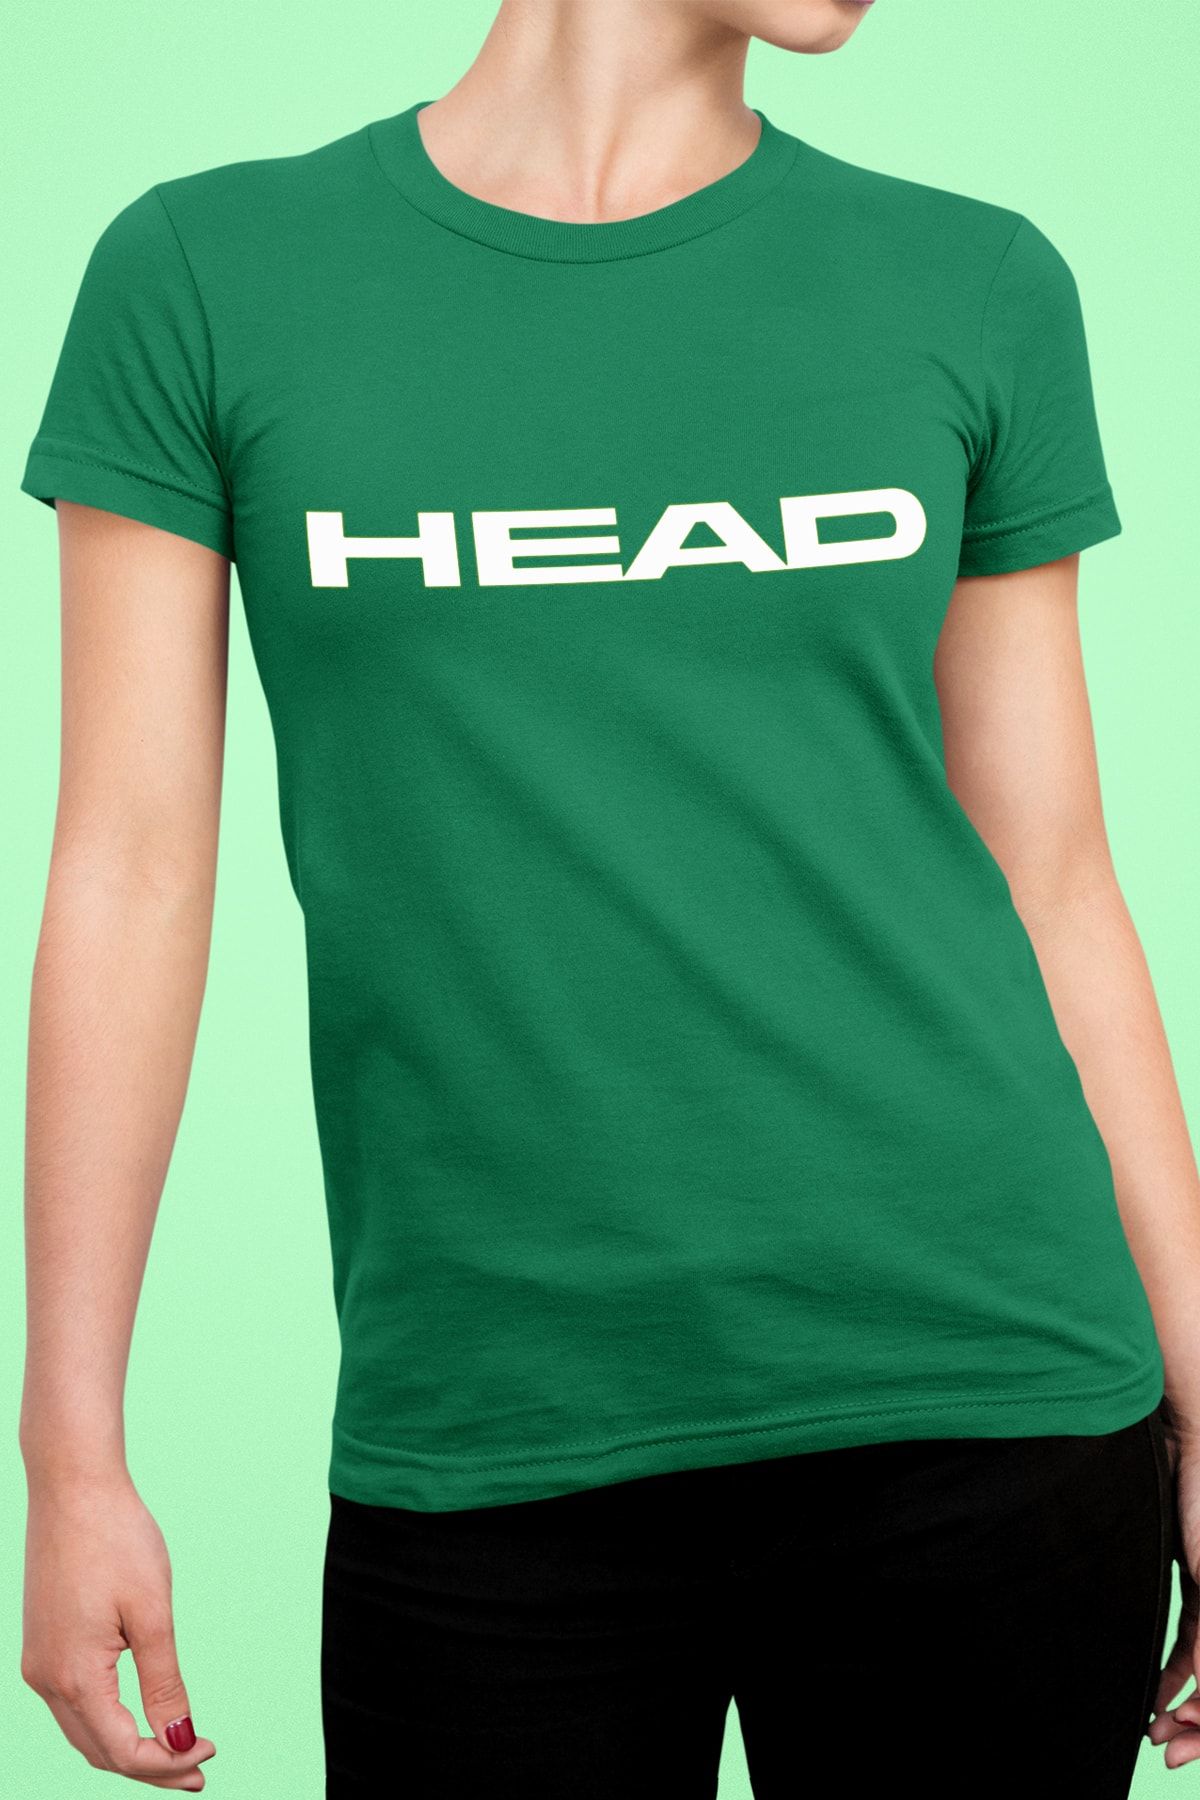 Head Kadın Koyu Yeşil Logo Baskı Basic Bisiklet Yaka Fit Kesim Spor T-shirt Pamuklu Tenis Tişörtü